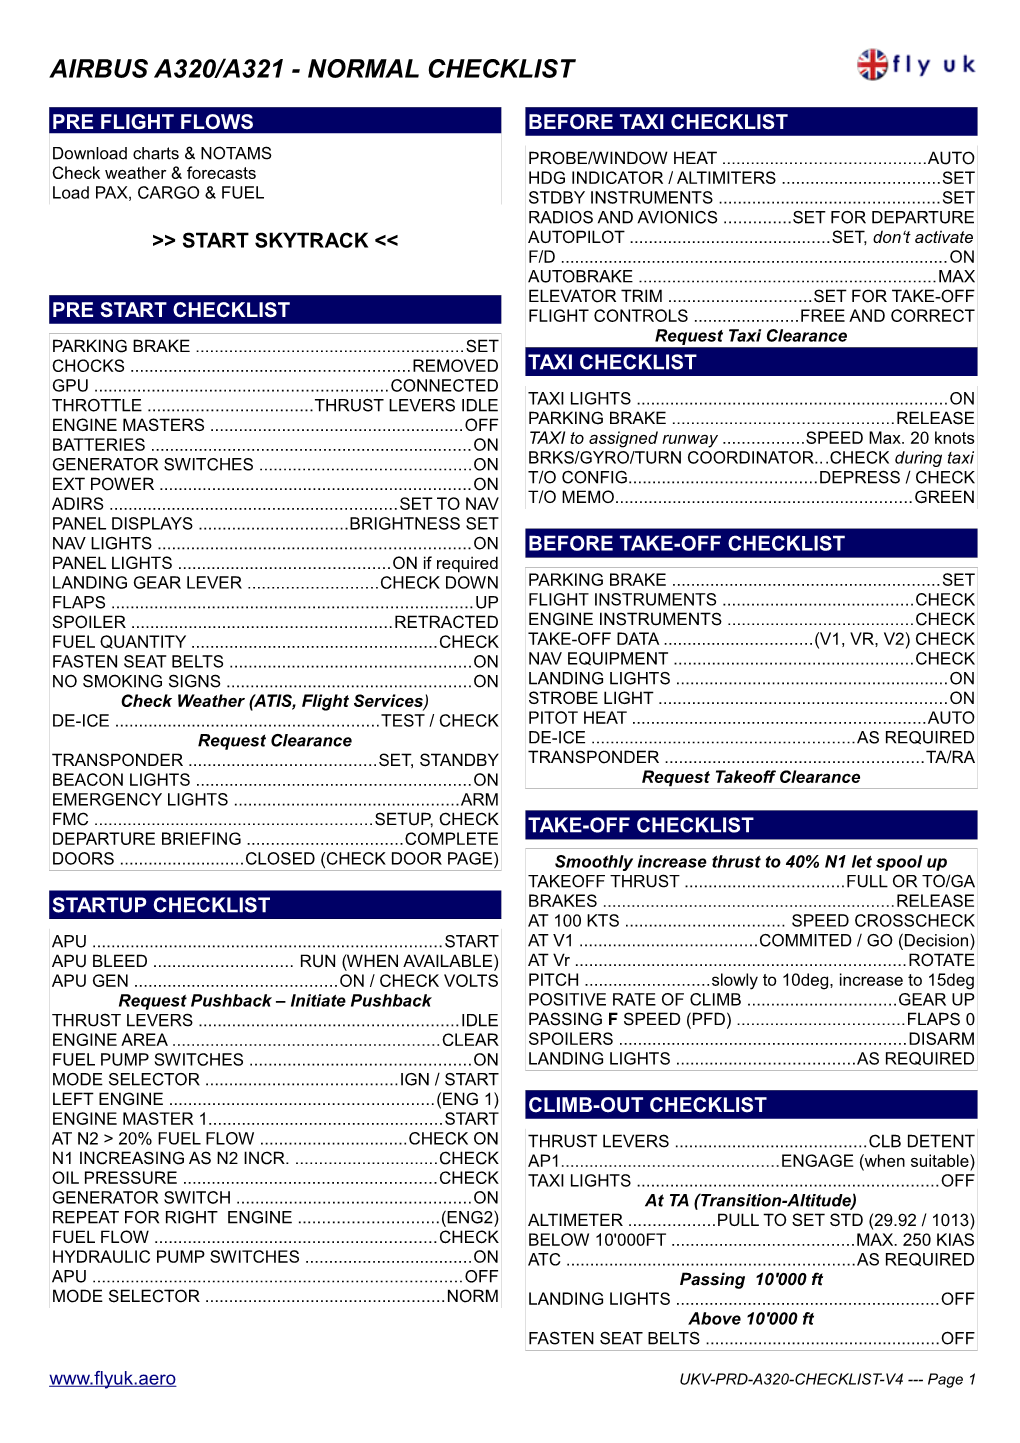 Airbus A320/A321 - Normal Checklist